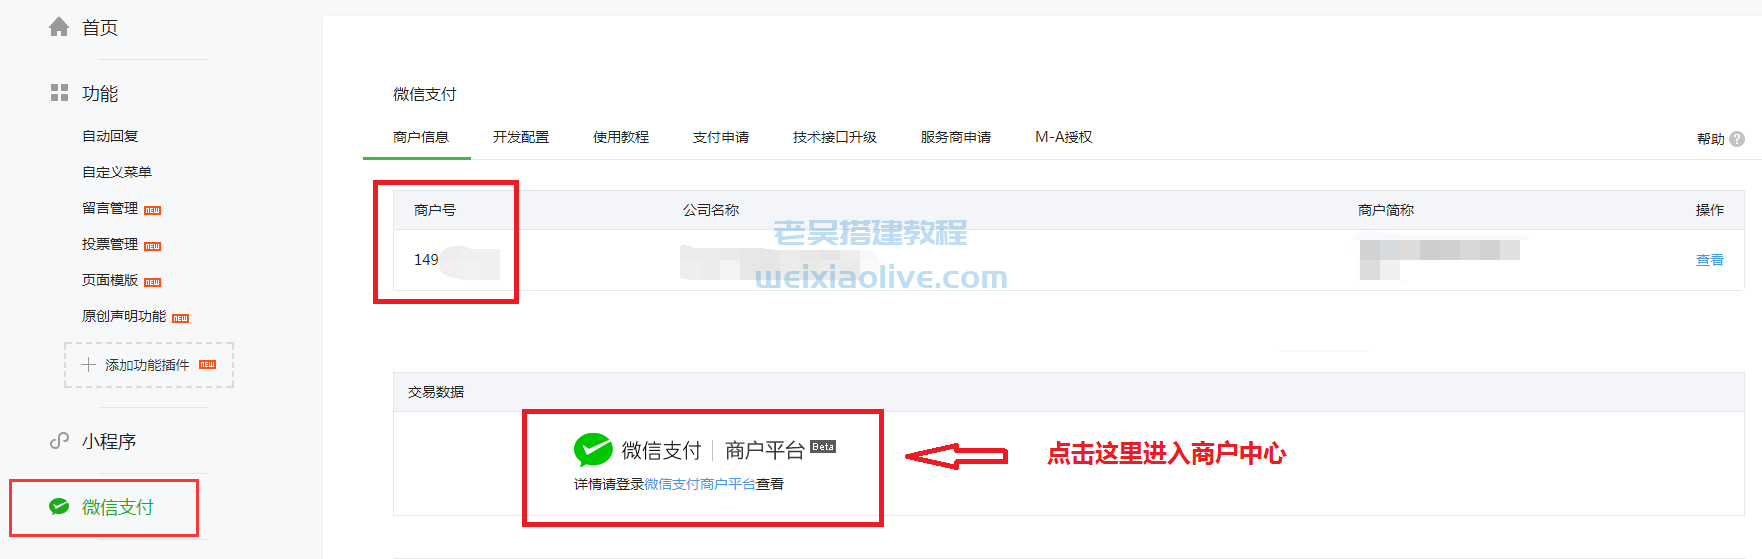 weixin支付接口申请及后台配置详细图文教程  第22张